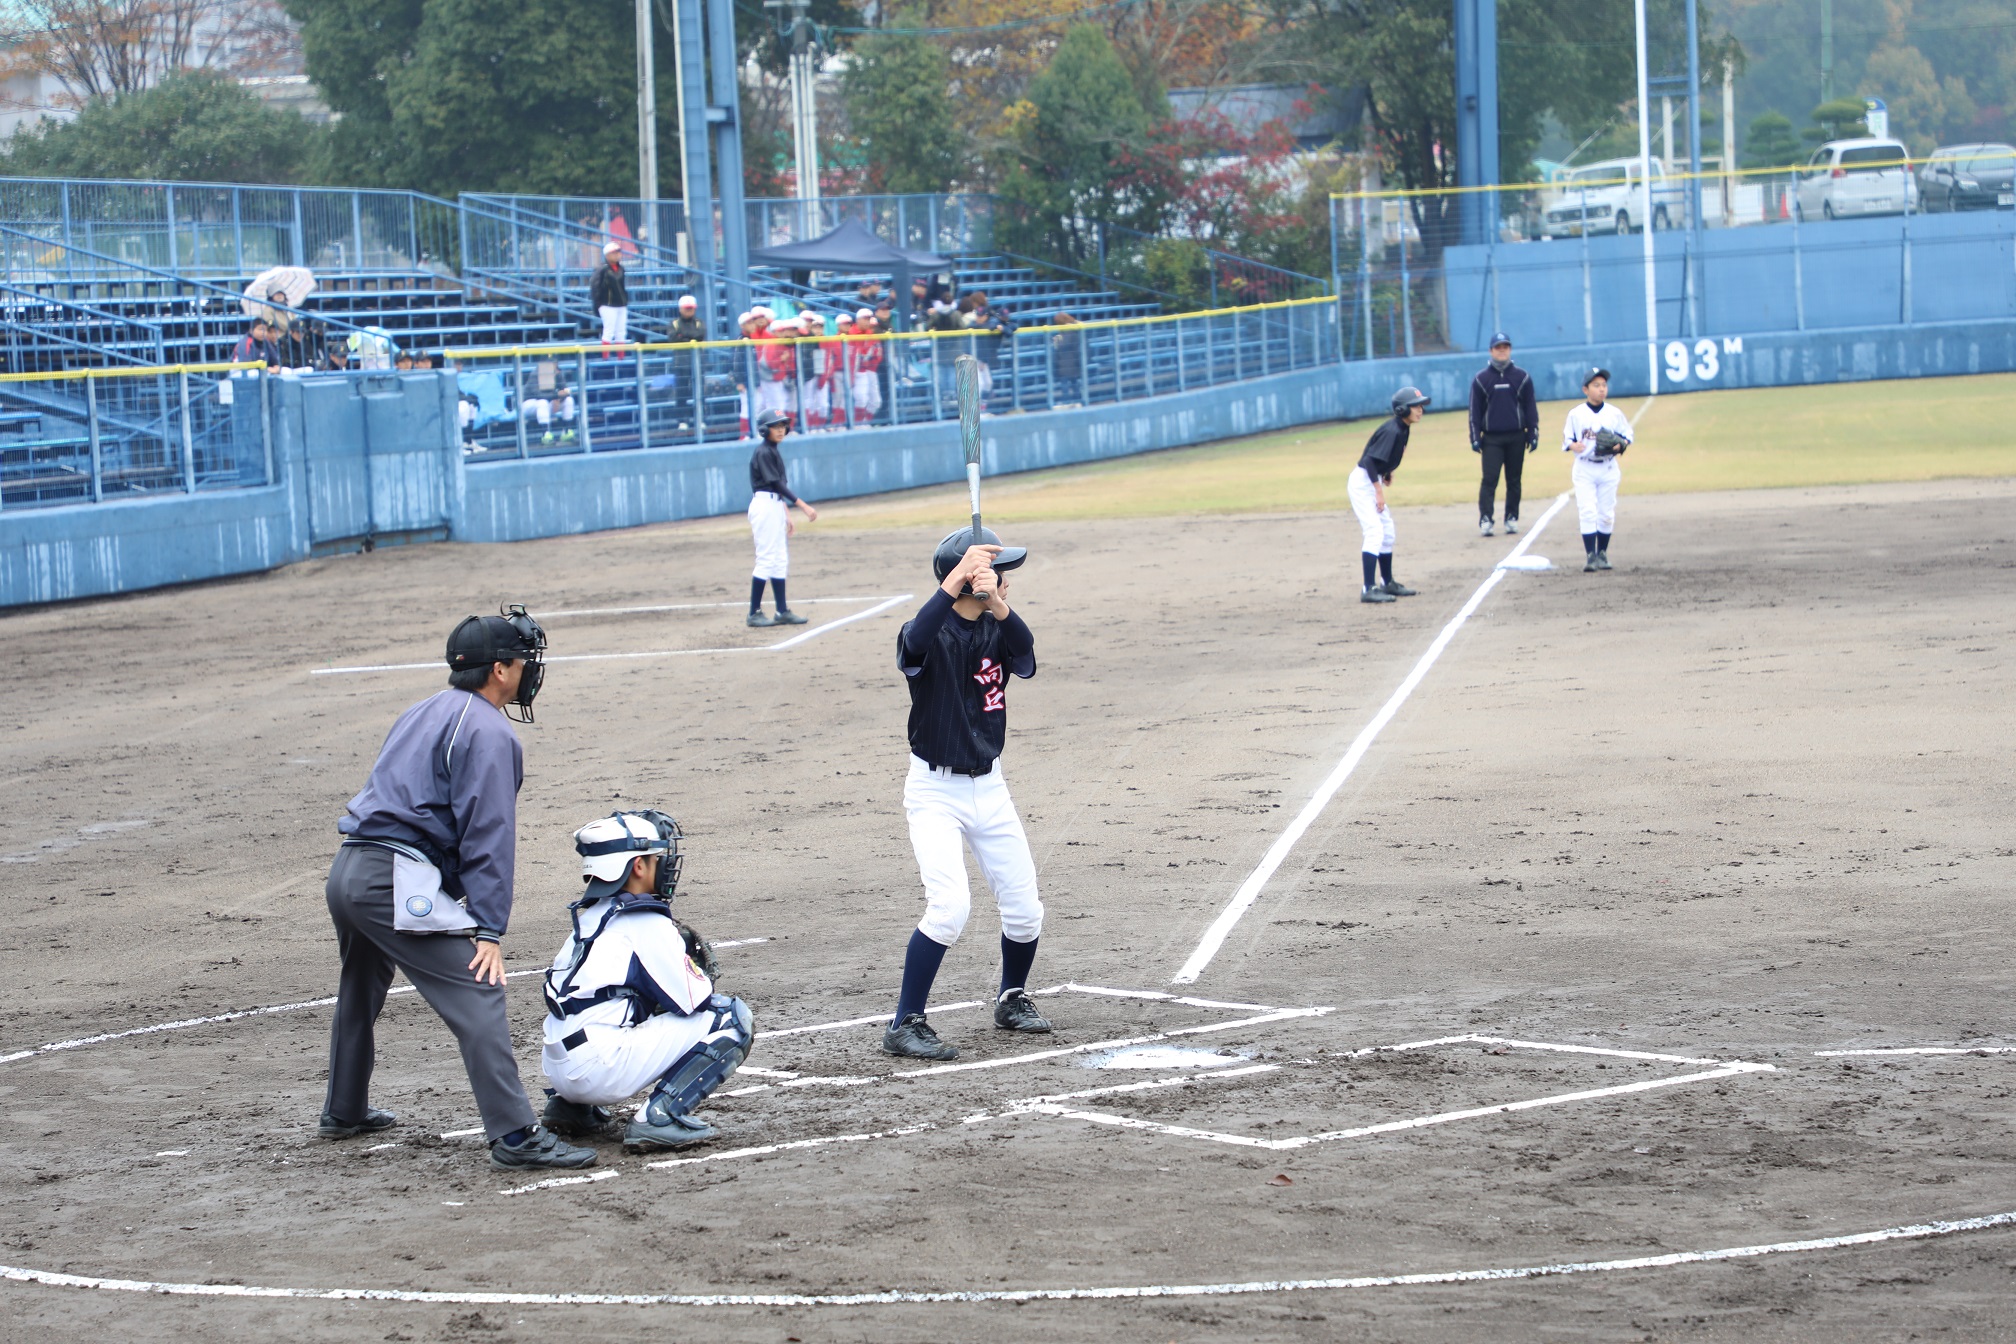 常石鉄工 第11回ツネイシホールディングス旗野球大会を開催
～福山市内の中学生野球チーム、8チームが出場～